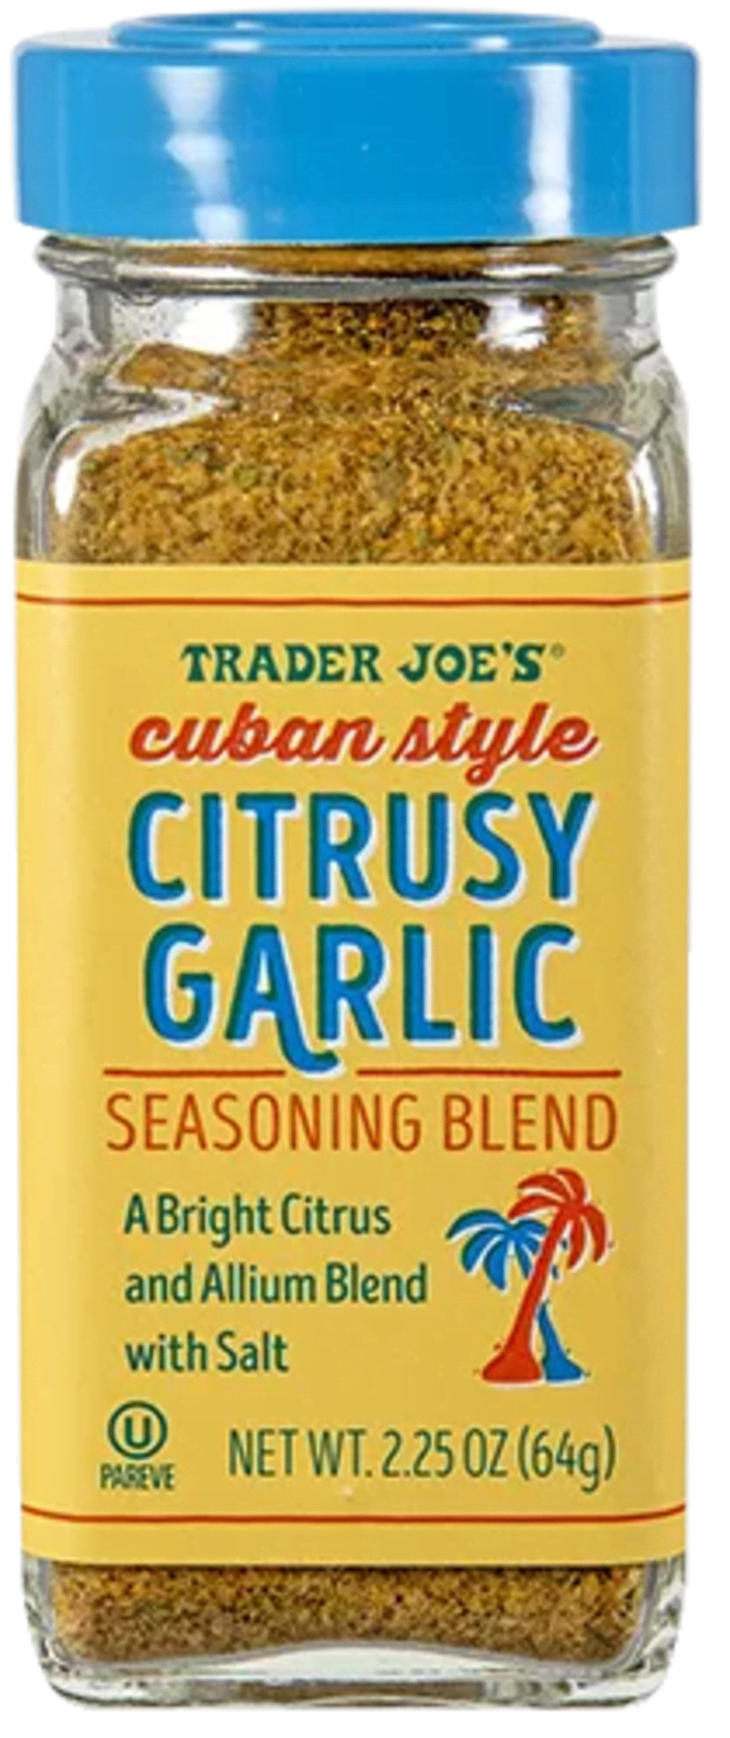 Cuban Style Citrusy Garlic Seasoning Blend at Trader Joe's